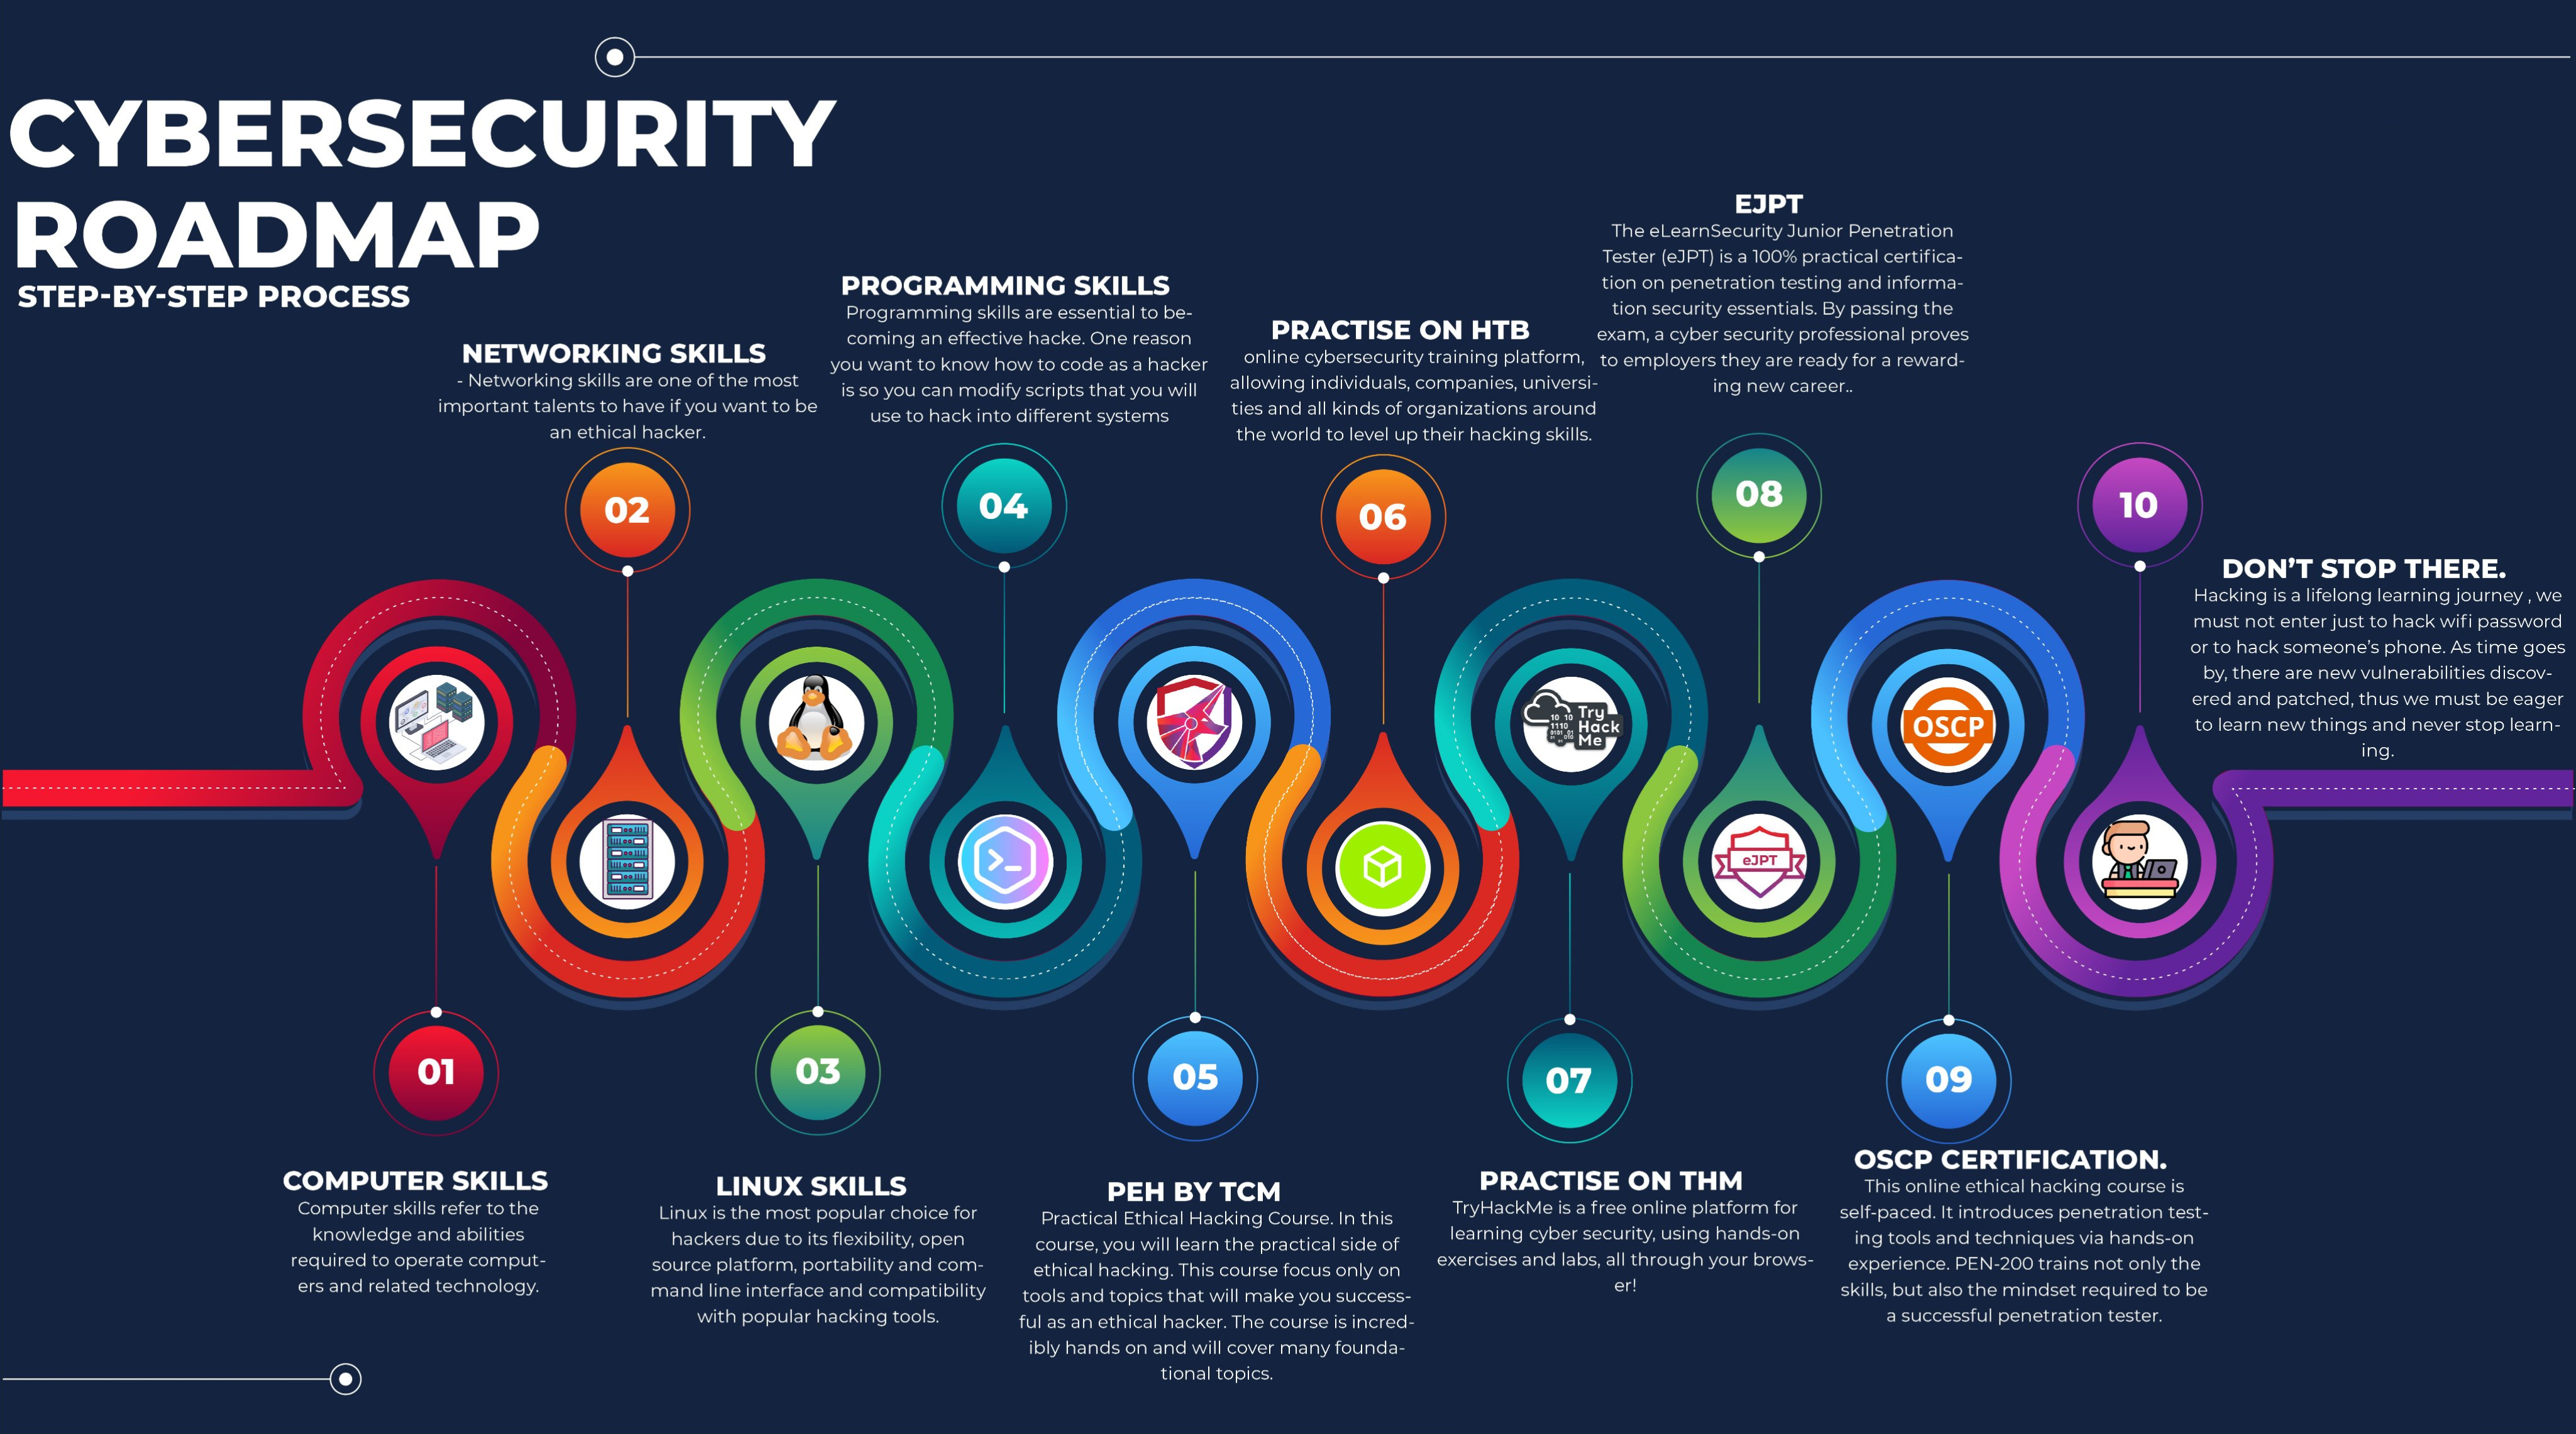 Cyber Security roadmap